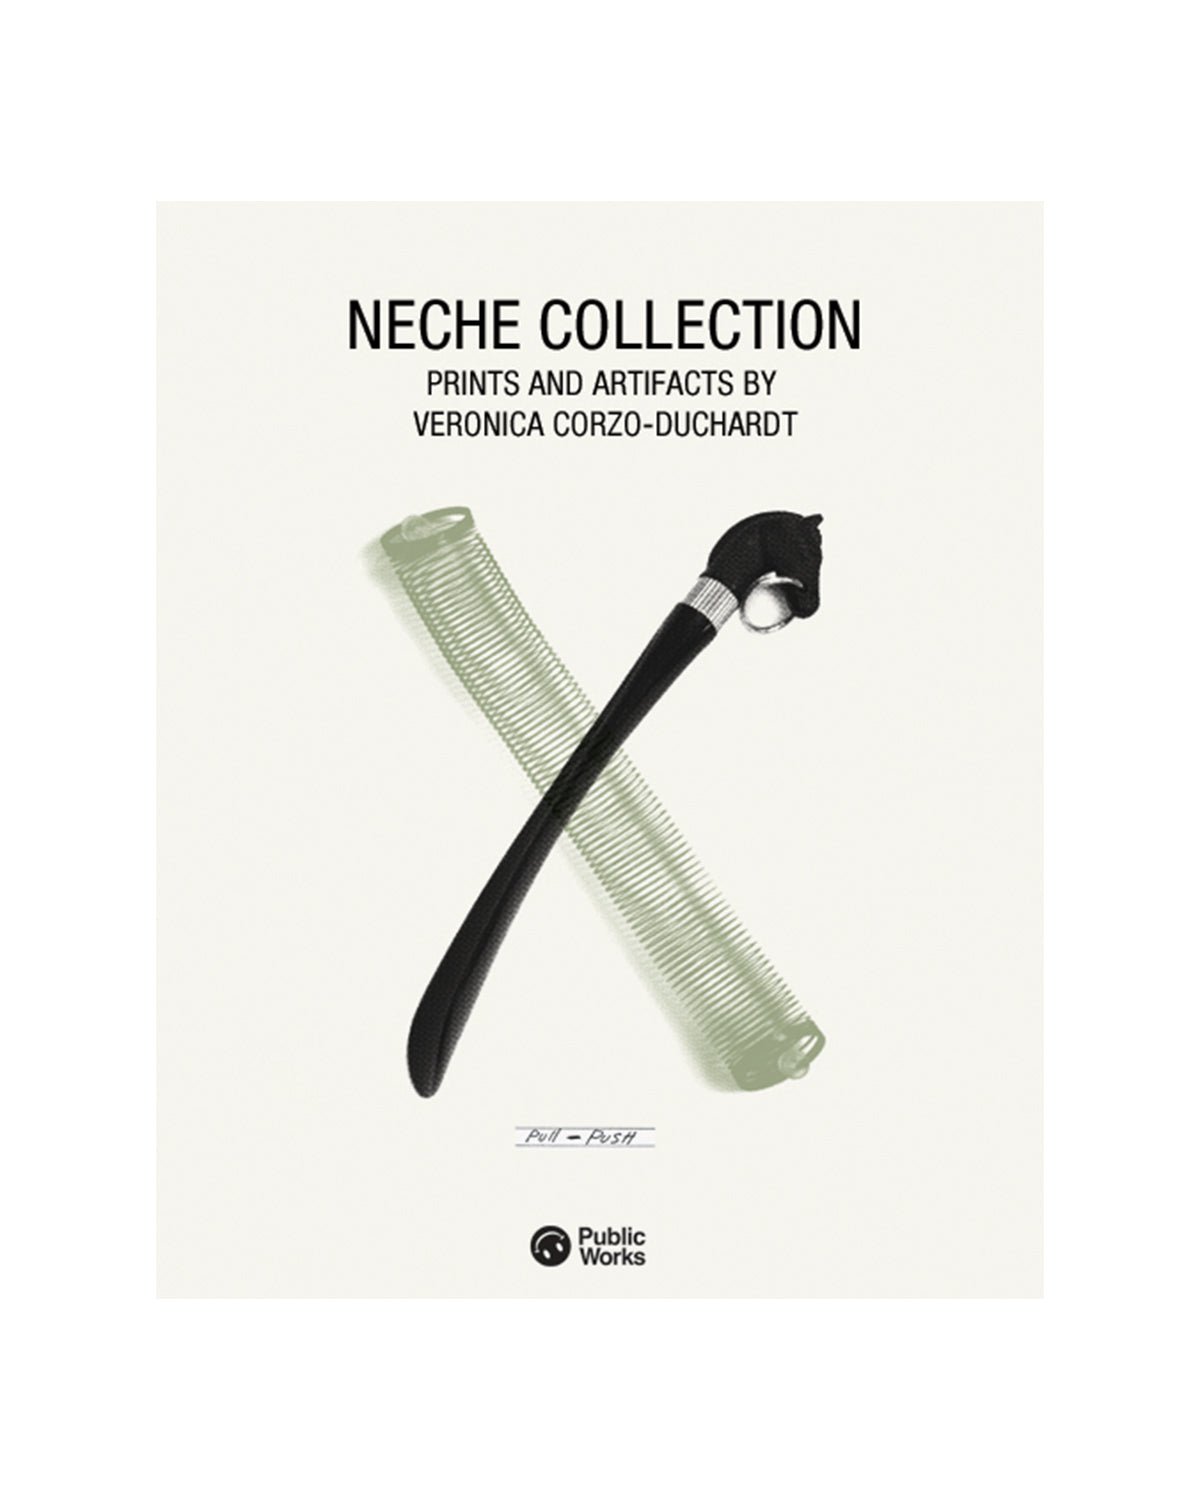 The Neche Collection - Veronica Corzo-Duchardt